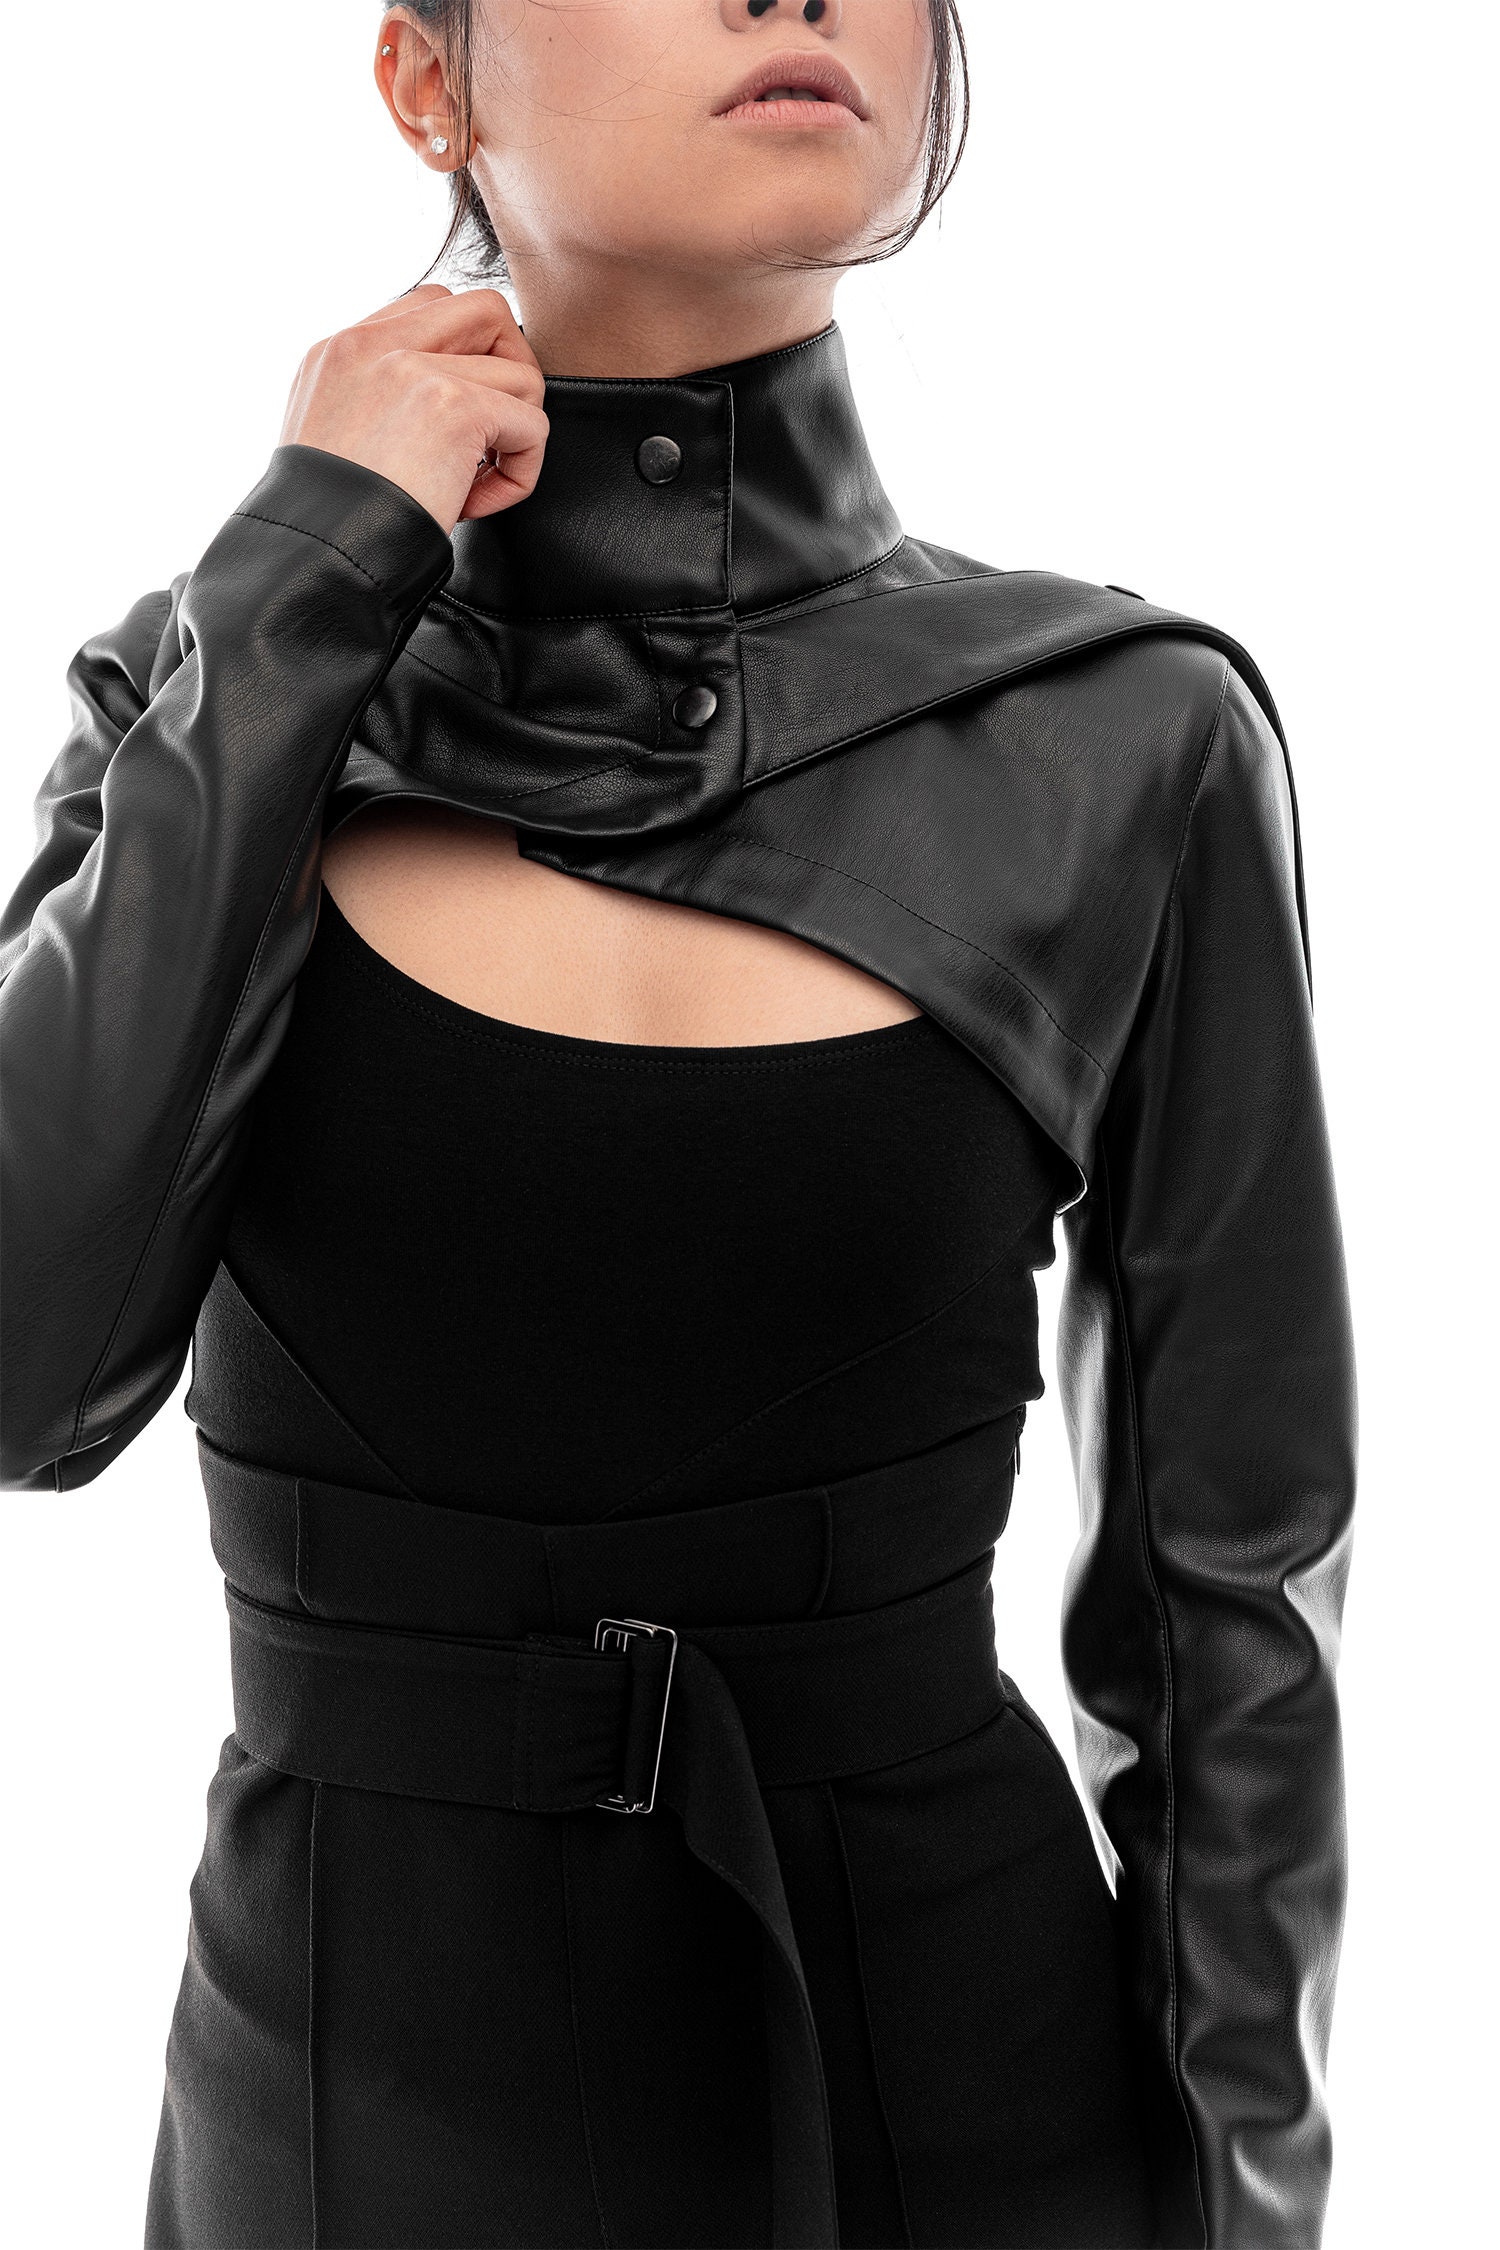 Eco Leather Bolero Jacket for Women Black Faux Leather Shrug - Etsy